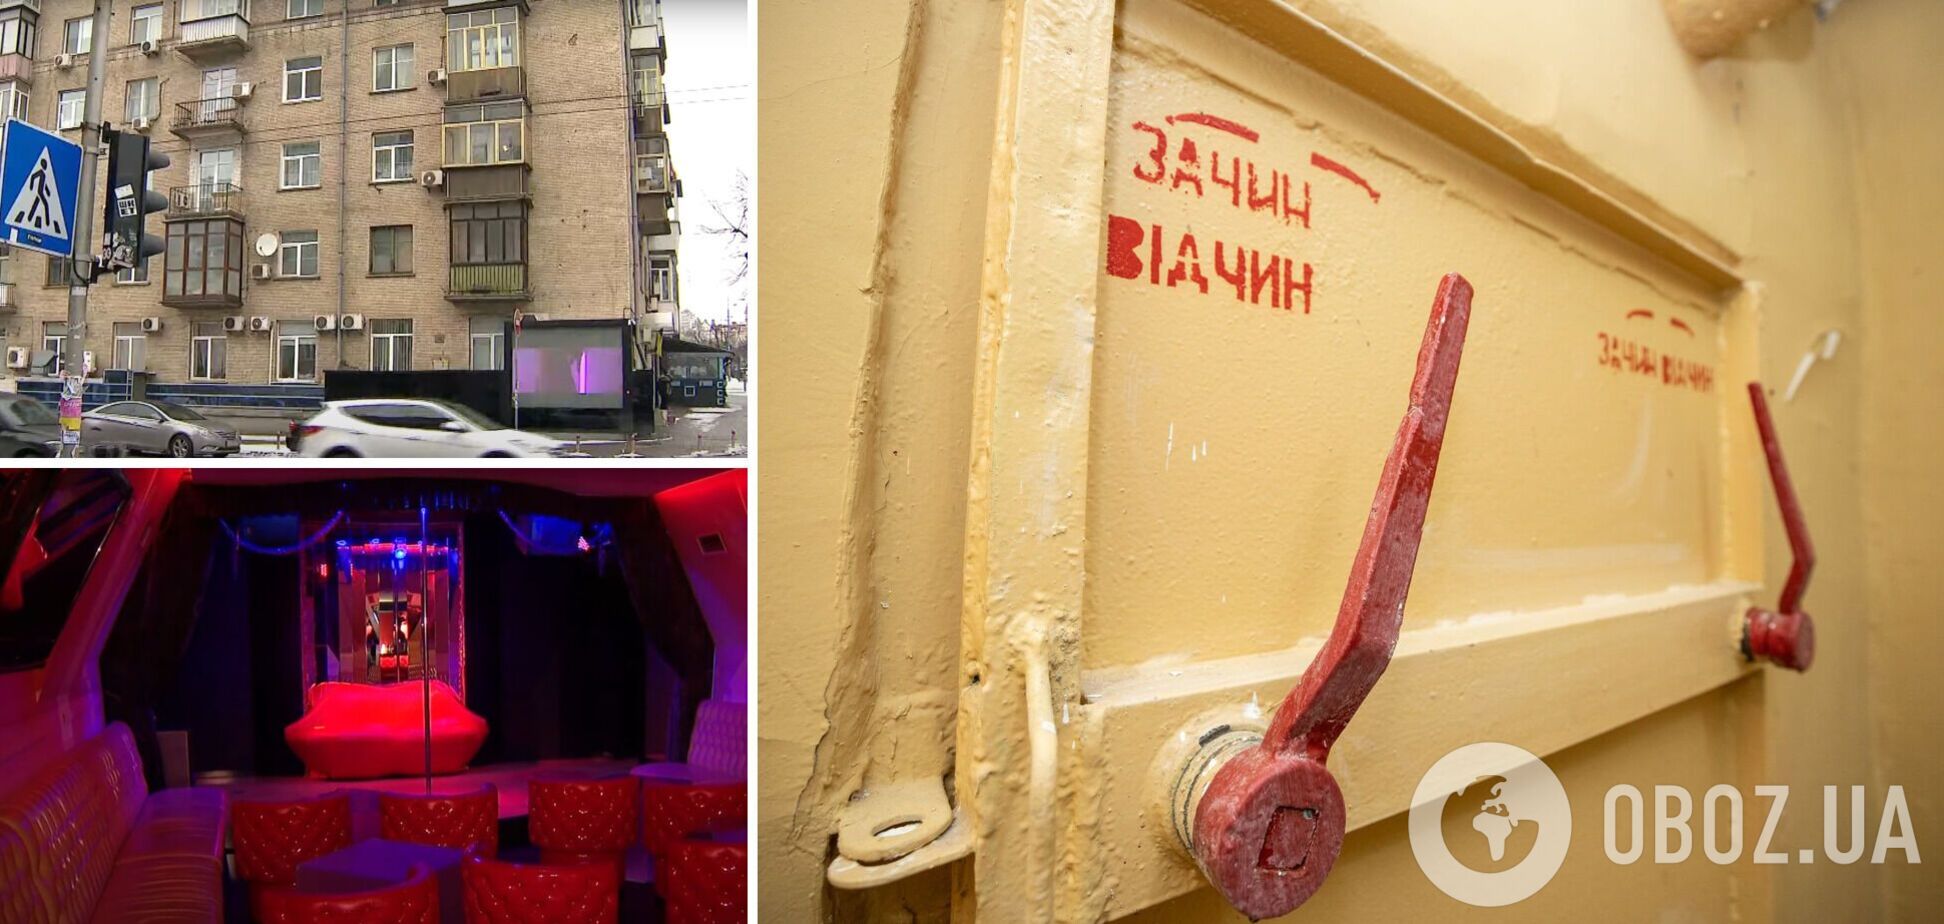 В киевском бомбоубежище оборудовали стриптиз-клуб. Фото и видео